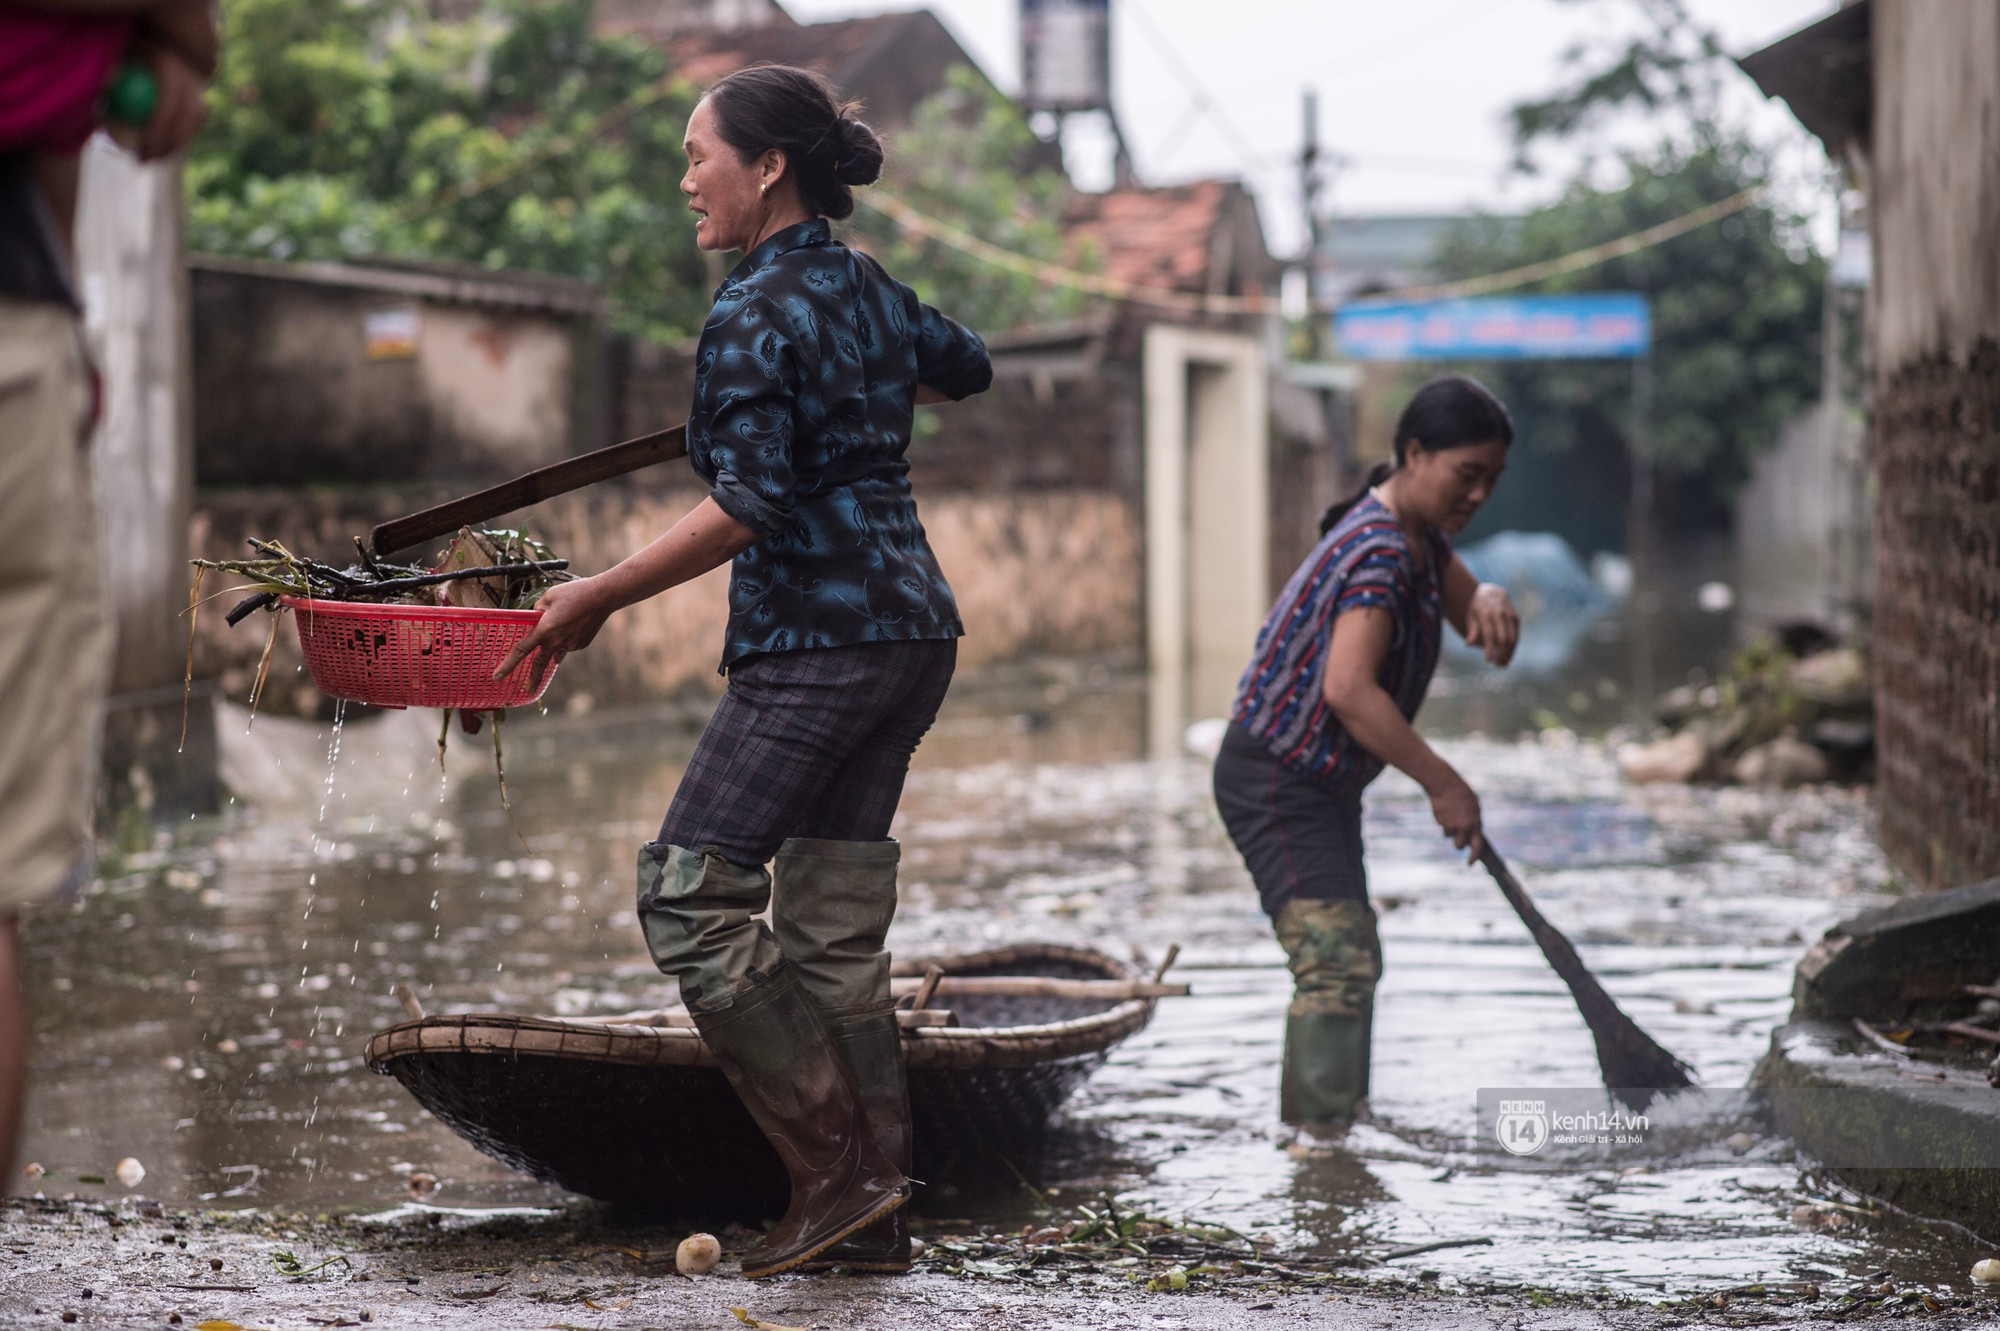 Chùm ảnh: 1 tuần sau lũ lớn, người dân Hà Nội vẫn phải chèo thuyền đi lại giữa biển rác thải nổi lềnh bềnh - Ảnh 18.